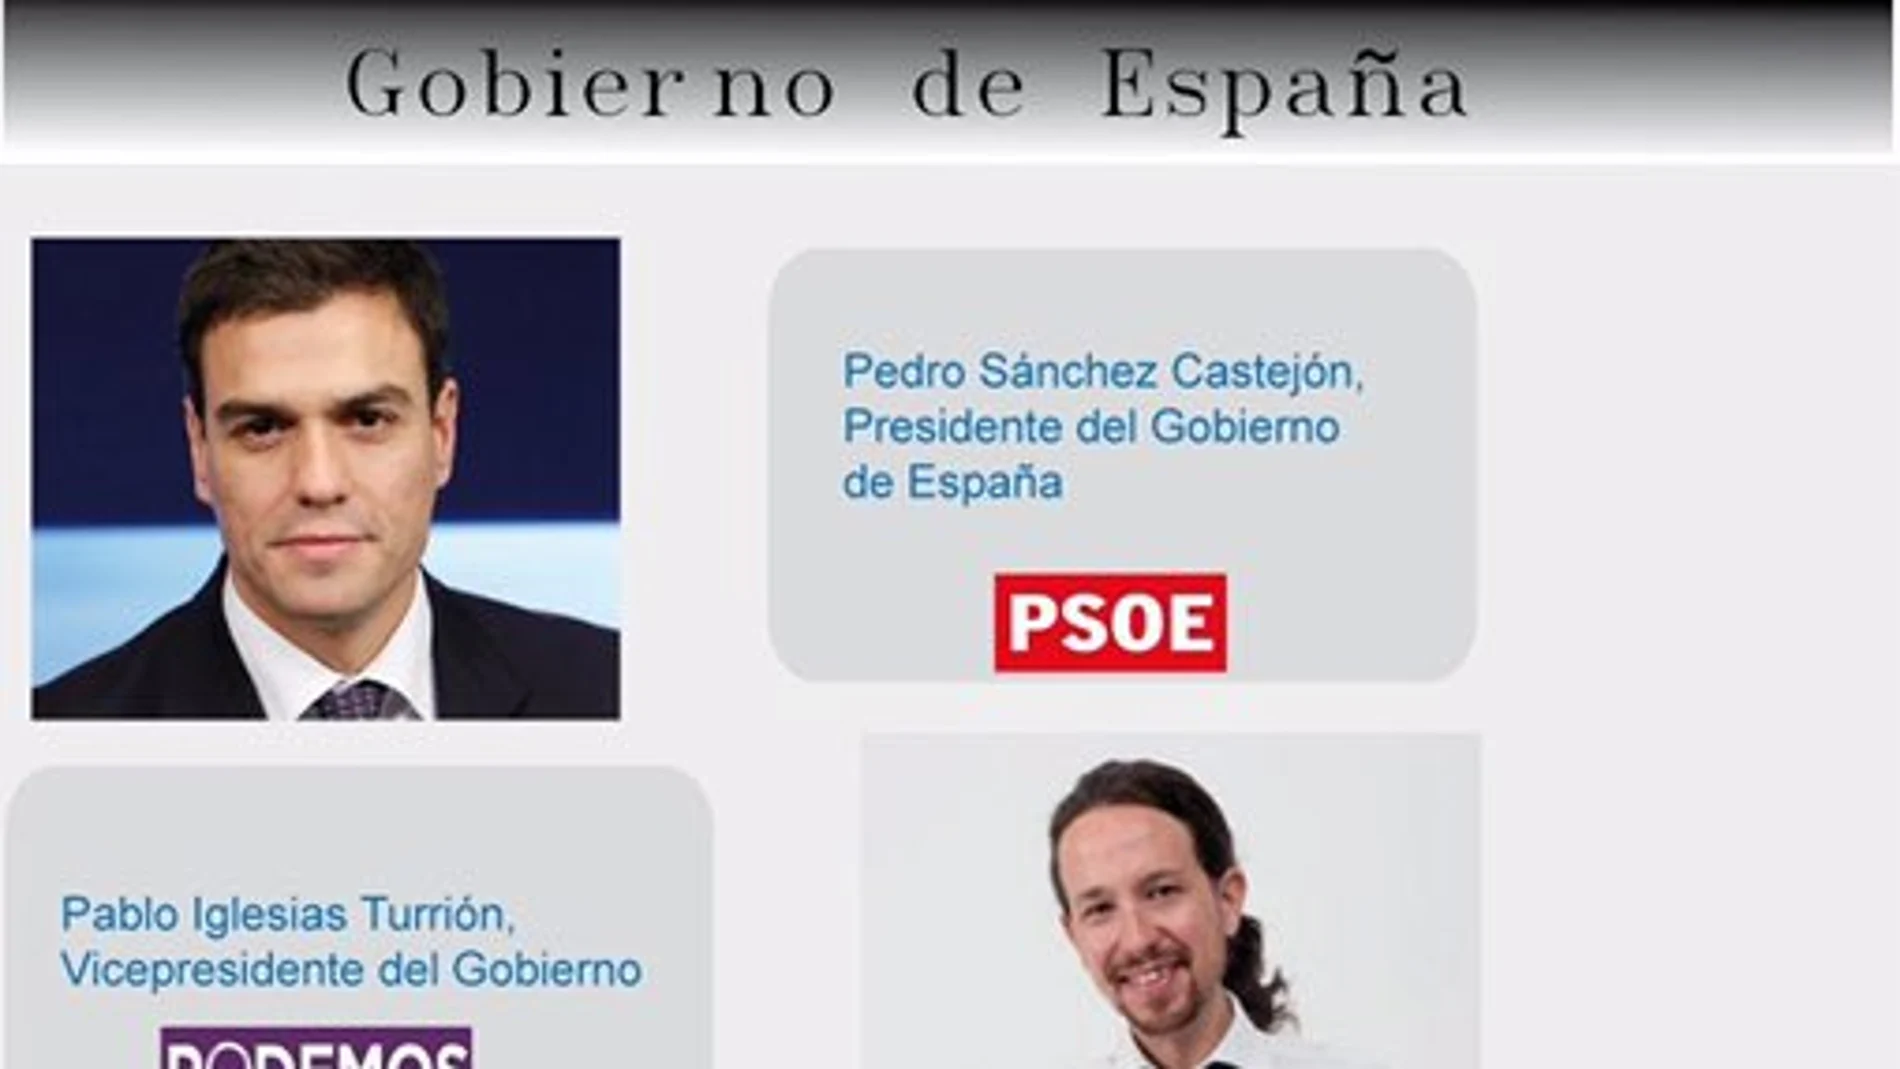 Esquema hecho público por Podemos Zaragoza en su cuenta de Twitter